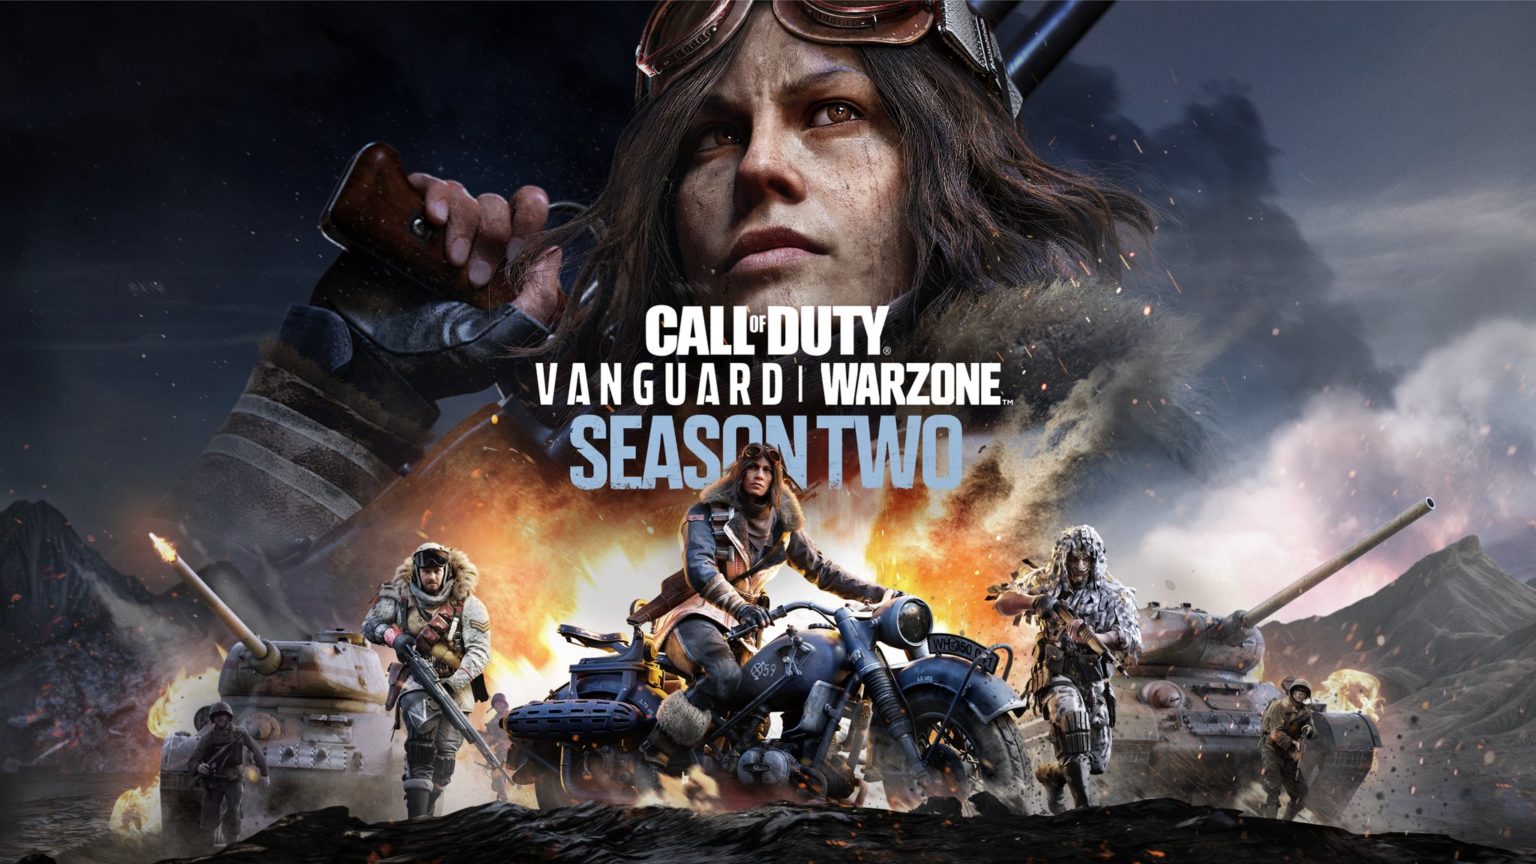 ¡Las ilustraciones de Call of Duty: Vanguard y Warzone Season 2 se filtraron con la actualización de PlayStation Network!